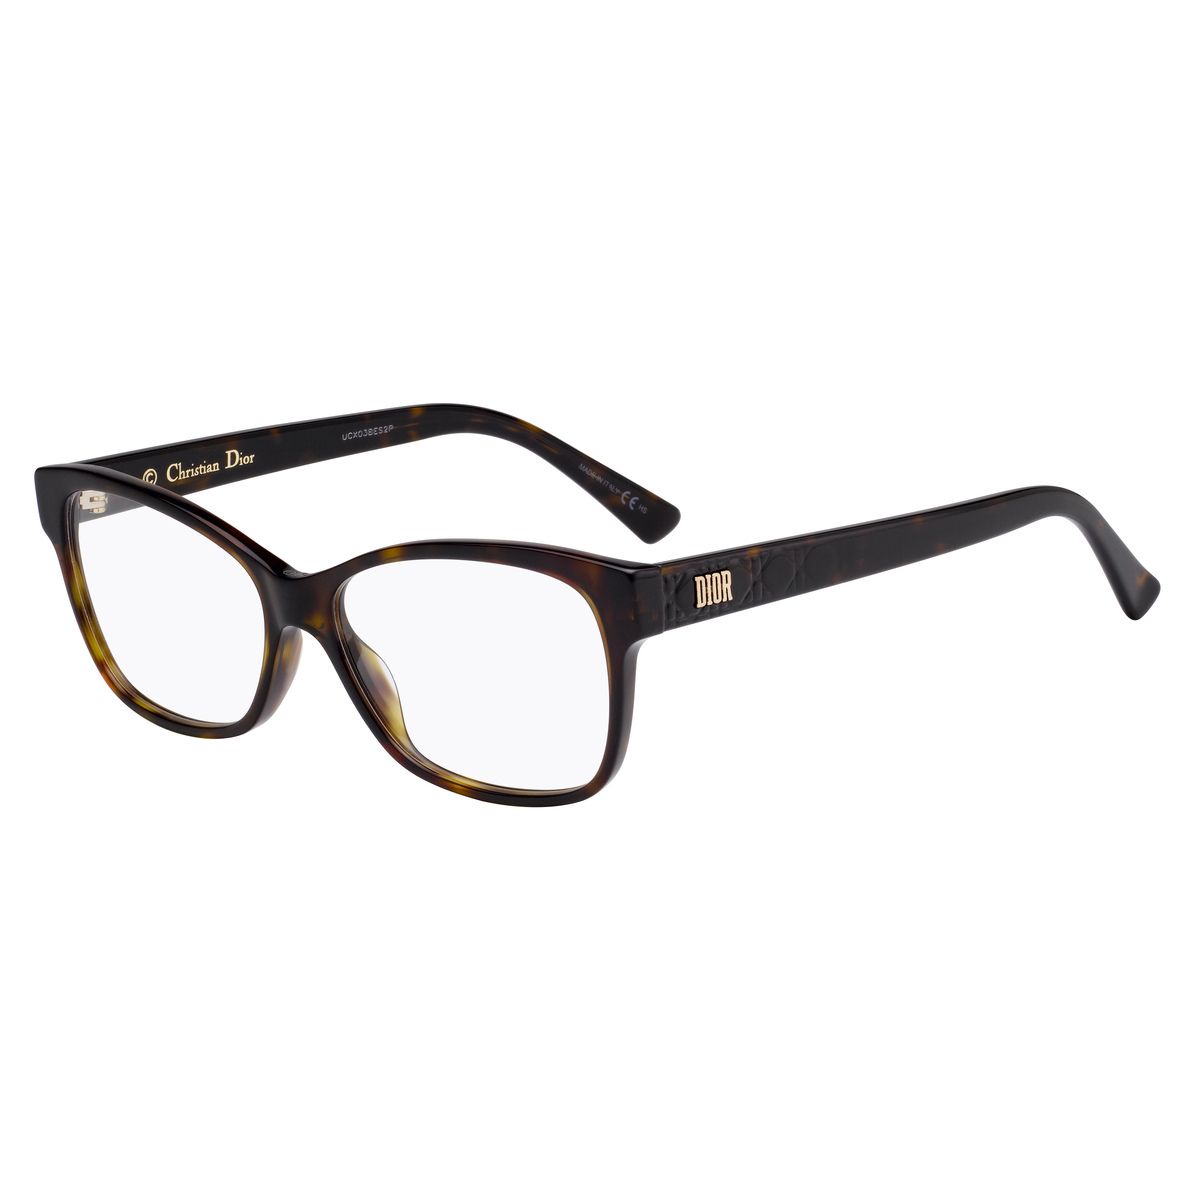 LADYDIORO2 Square Eyeglasses 86 - size  55